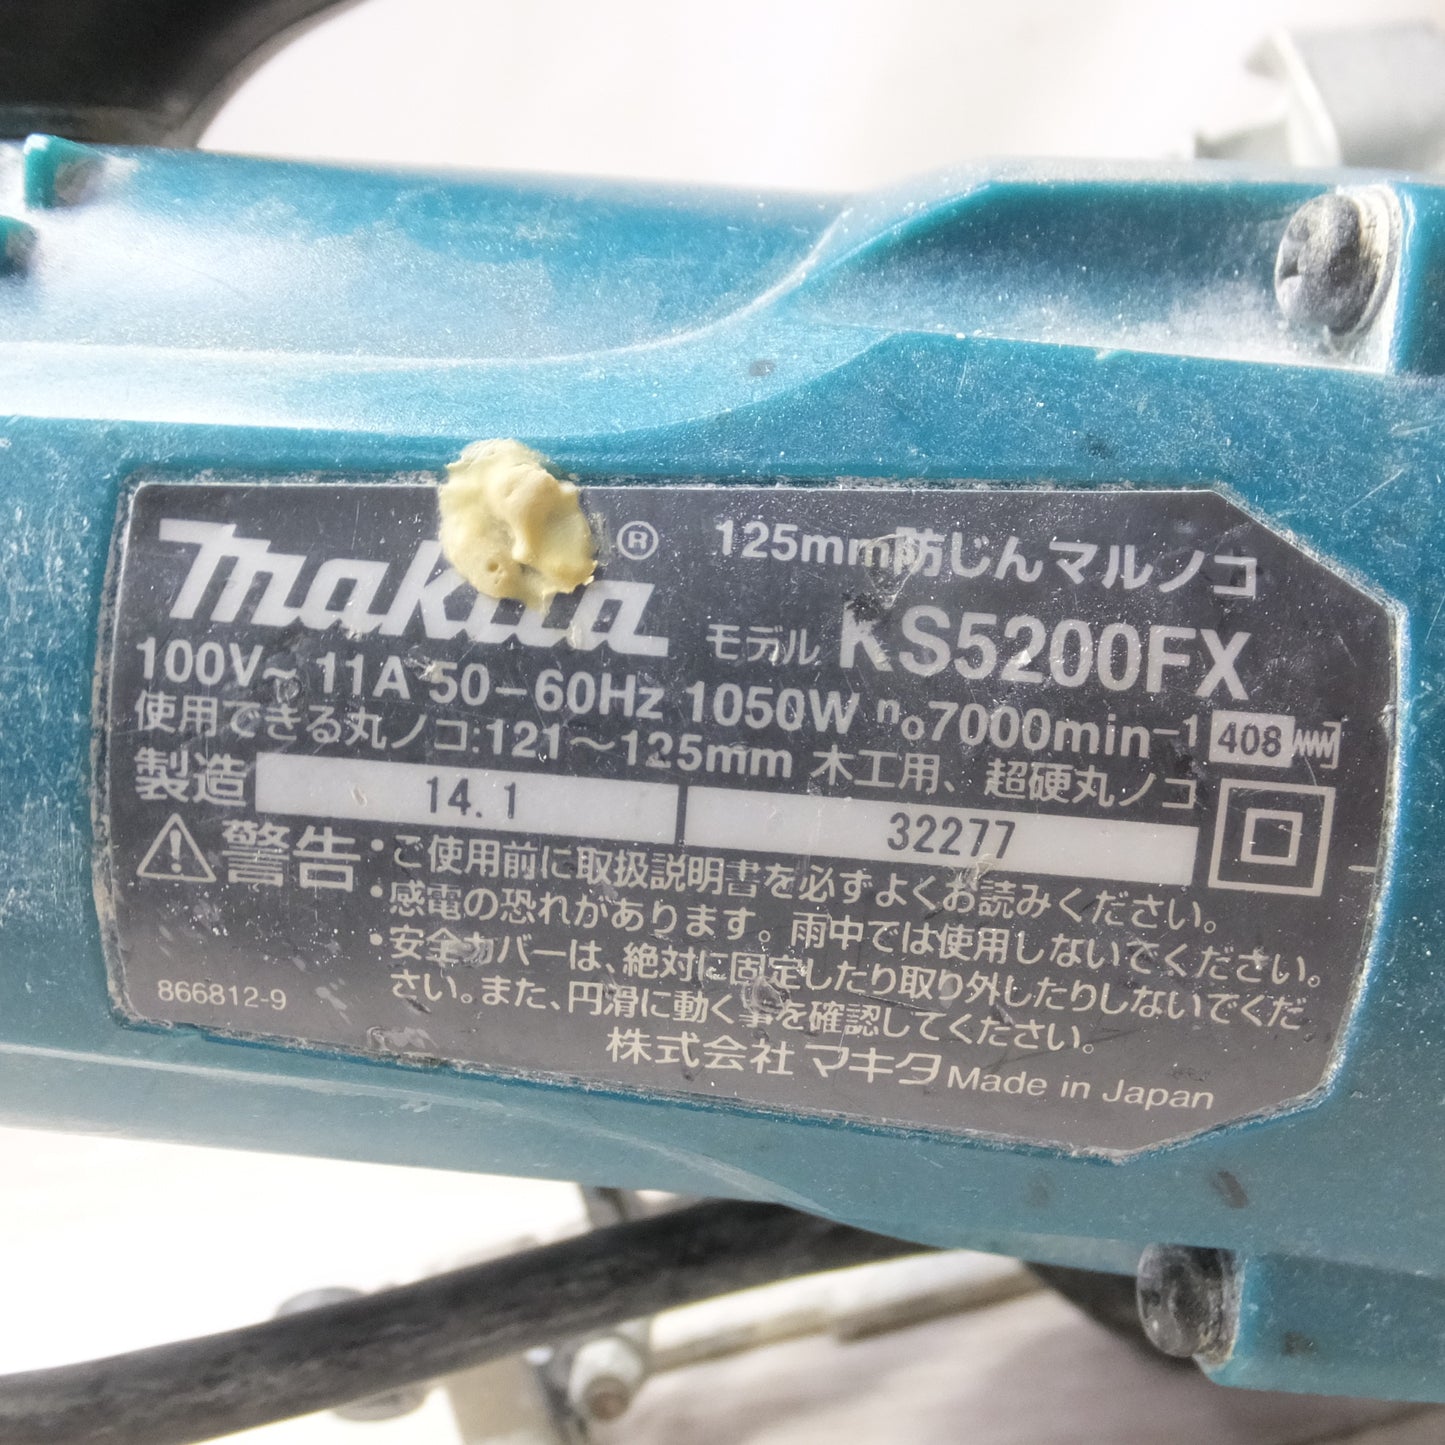 [送料無料] ◆makita マキタ 125mm 防じんマルノコ KS5200FX 切断機 電動工具 100V◆